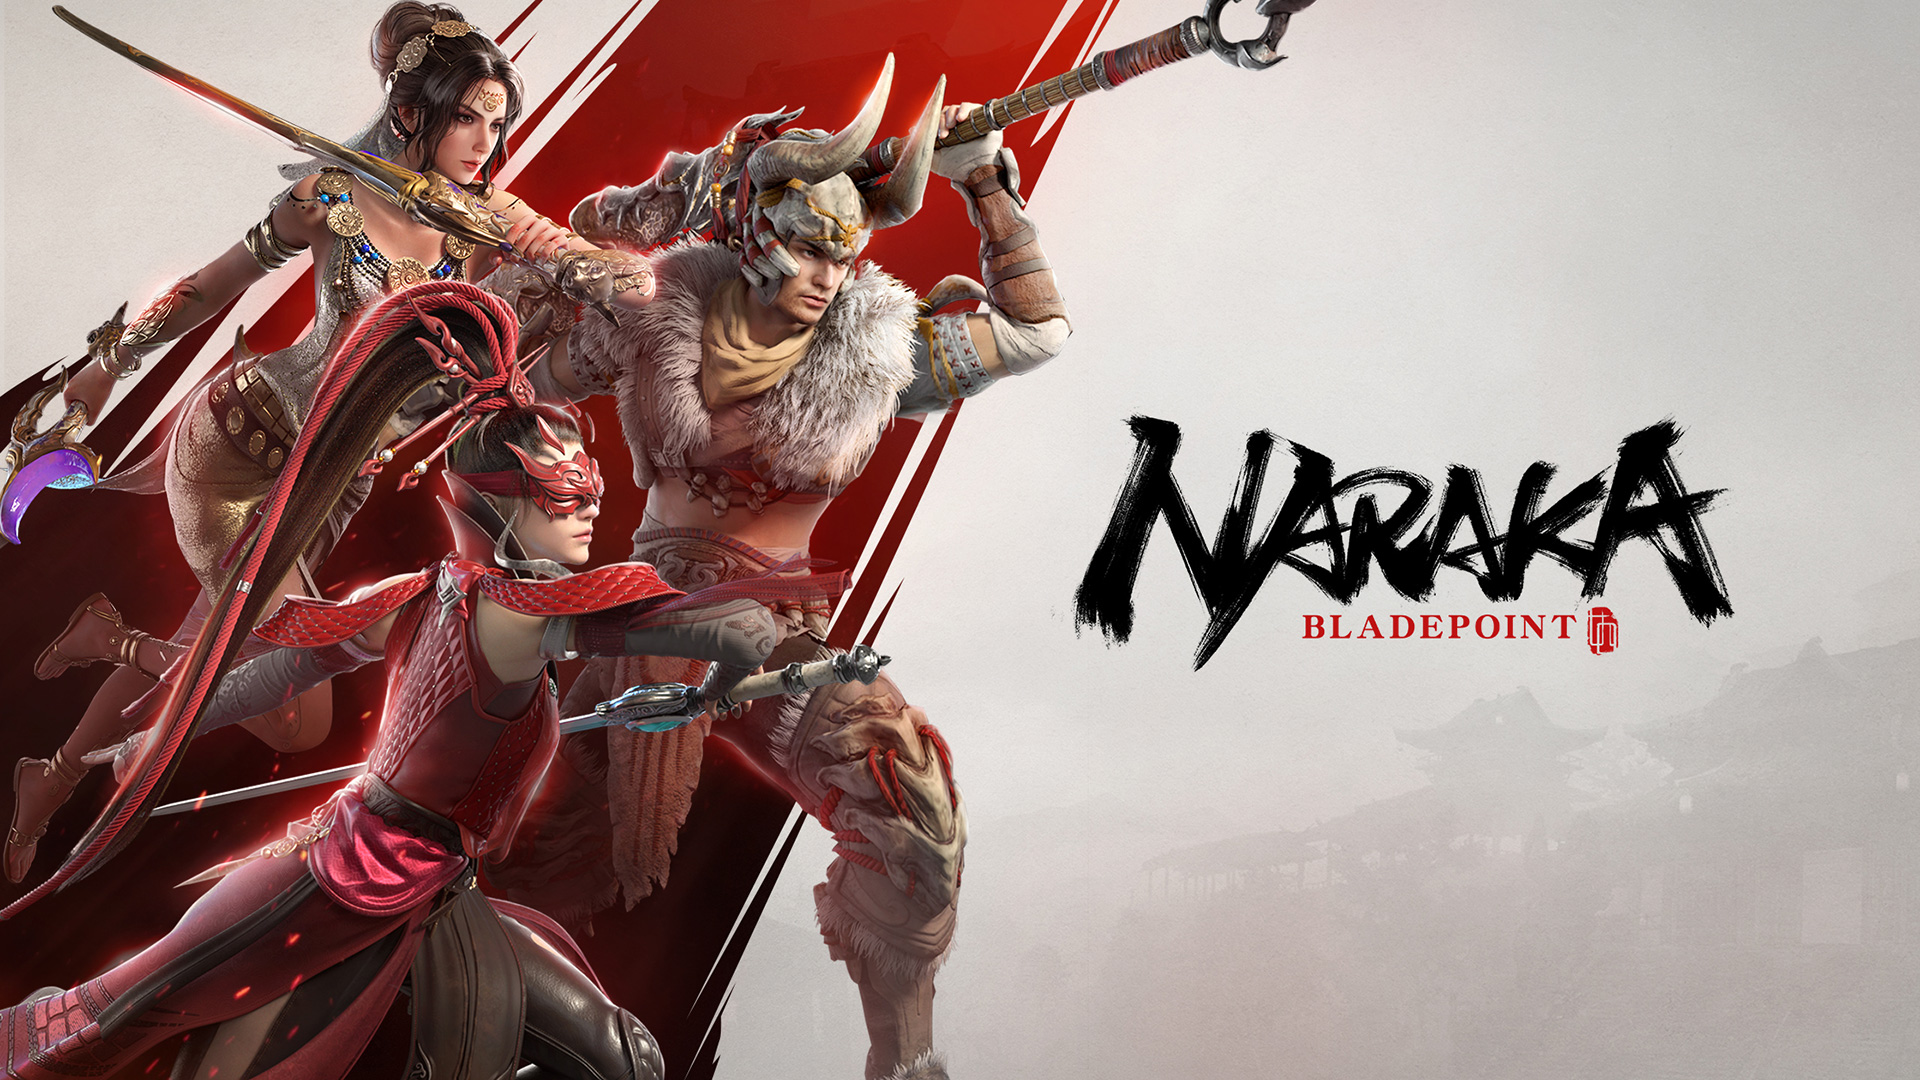 Den eventyrlige kamp-royalen Naraka: Bladepoint har allerede blitt spilt av over 40 millioner spillere.